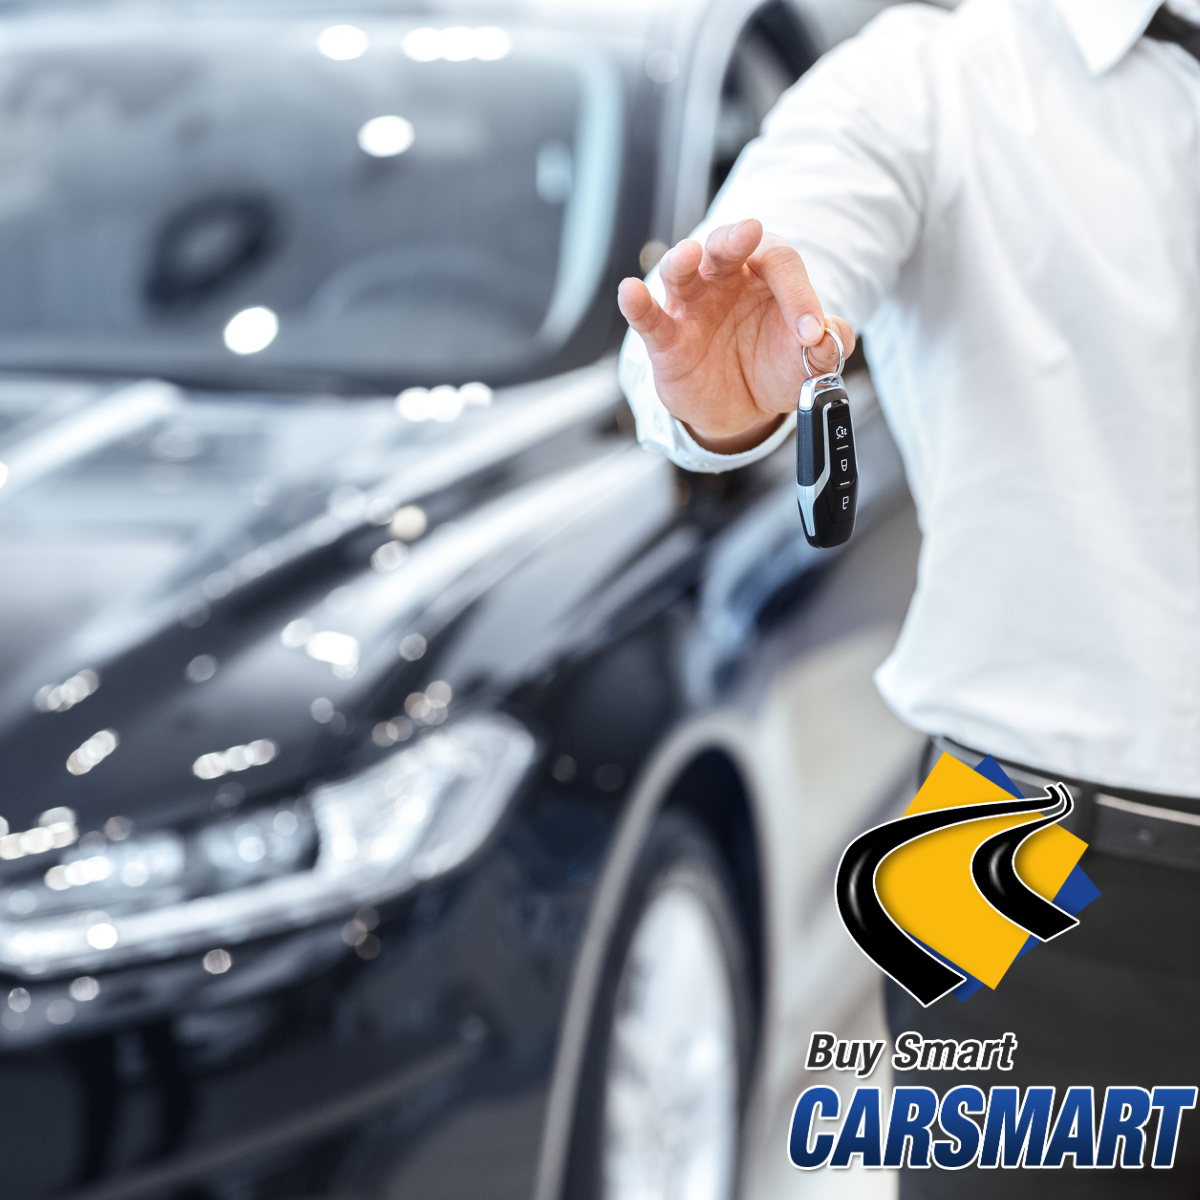 Make CarSmart Your Go-To Car Dealer in Arlington!